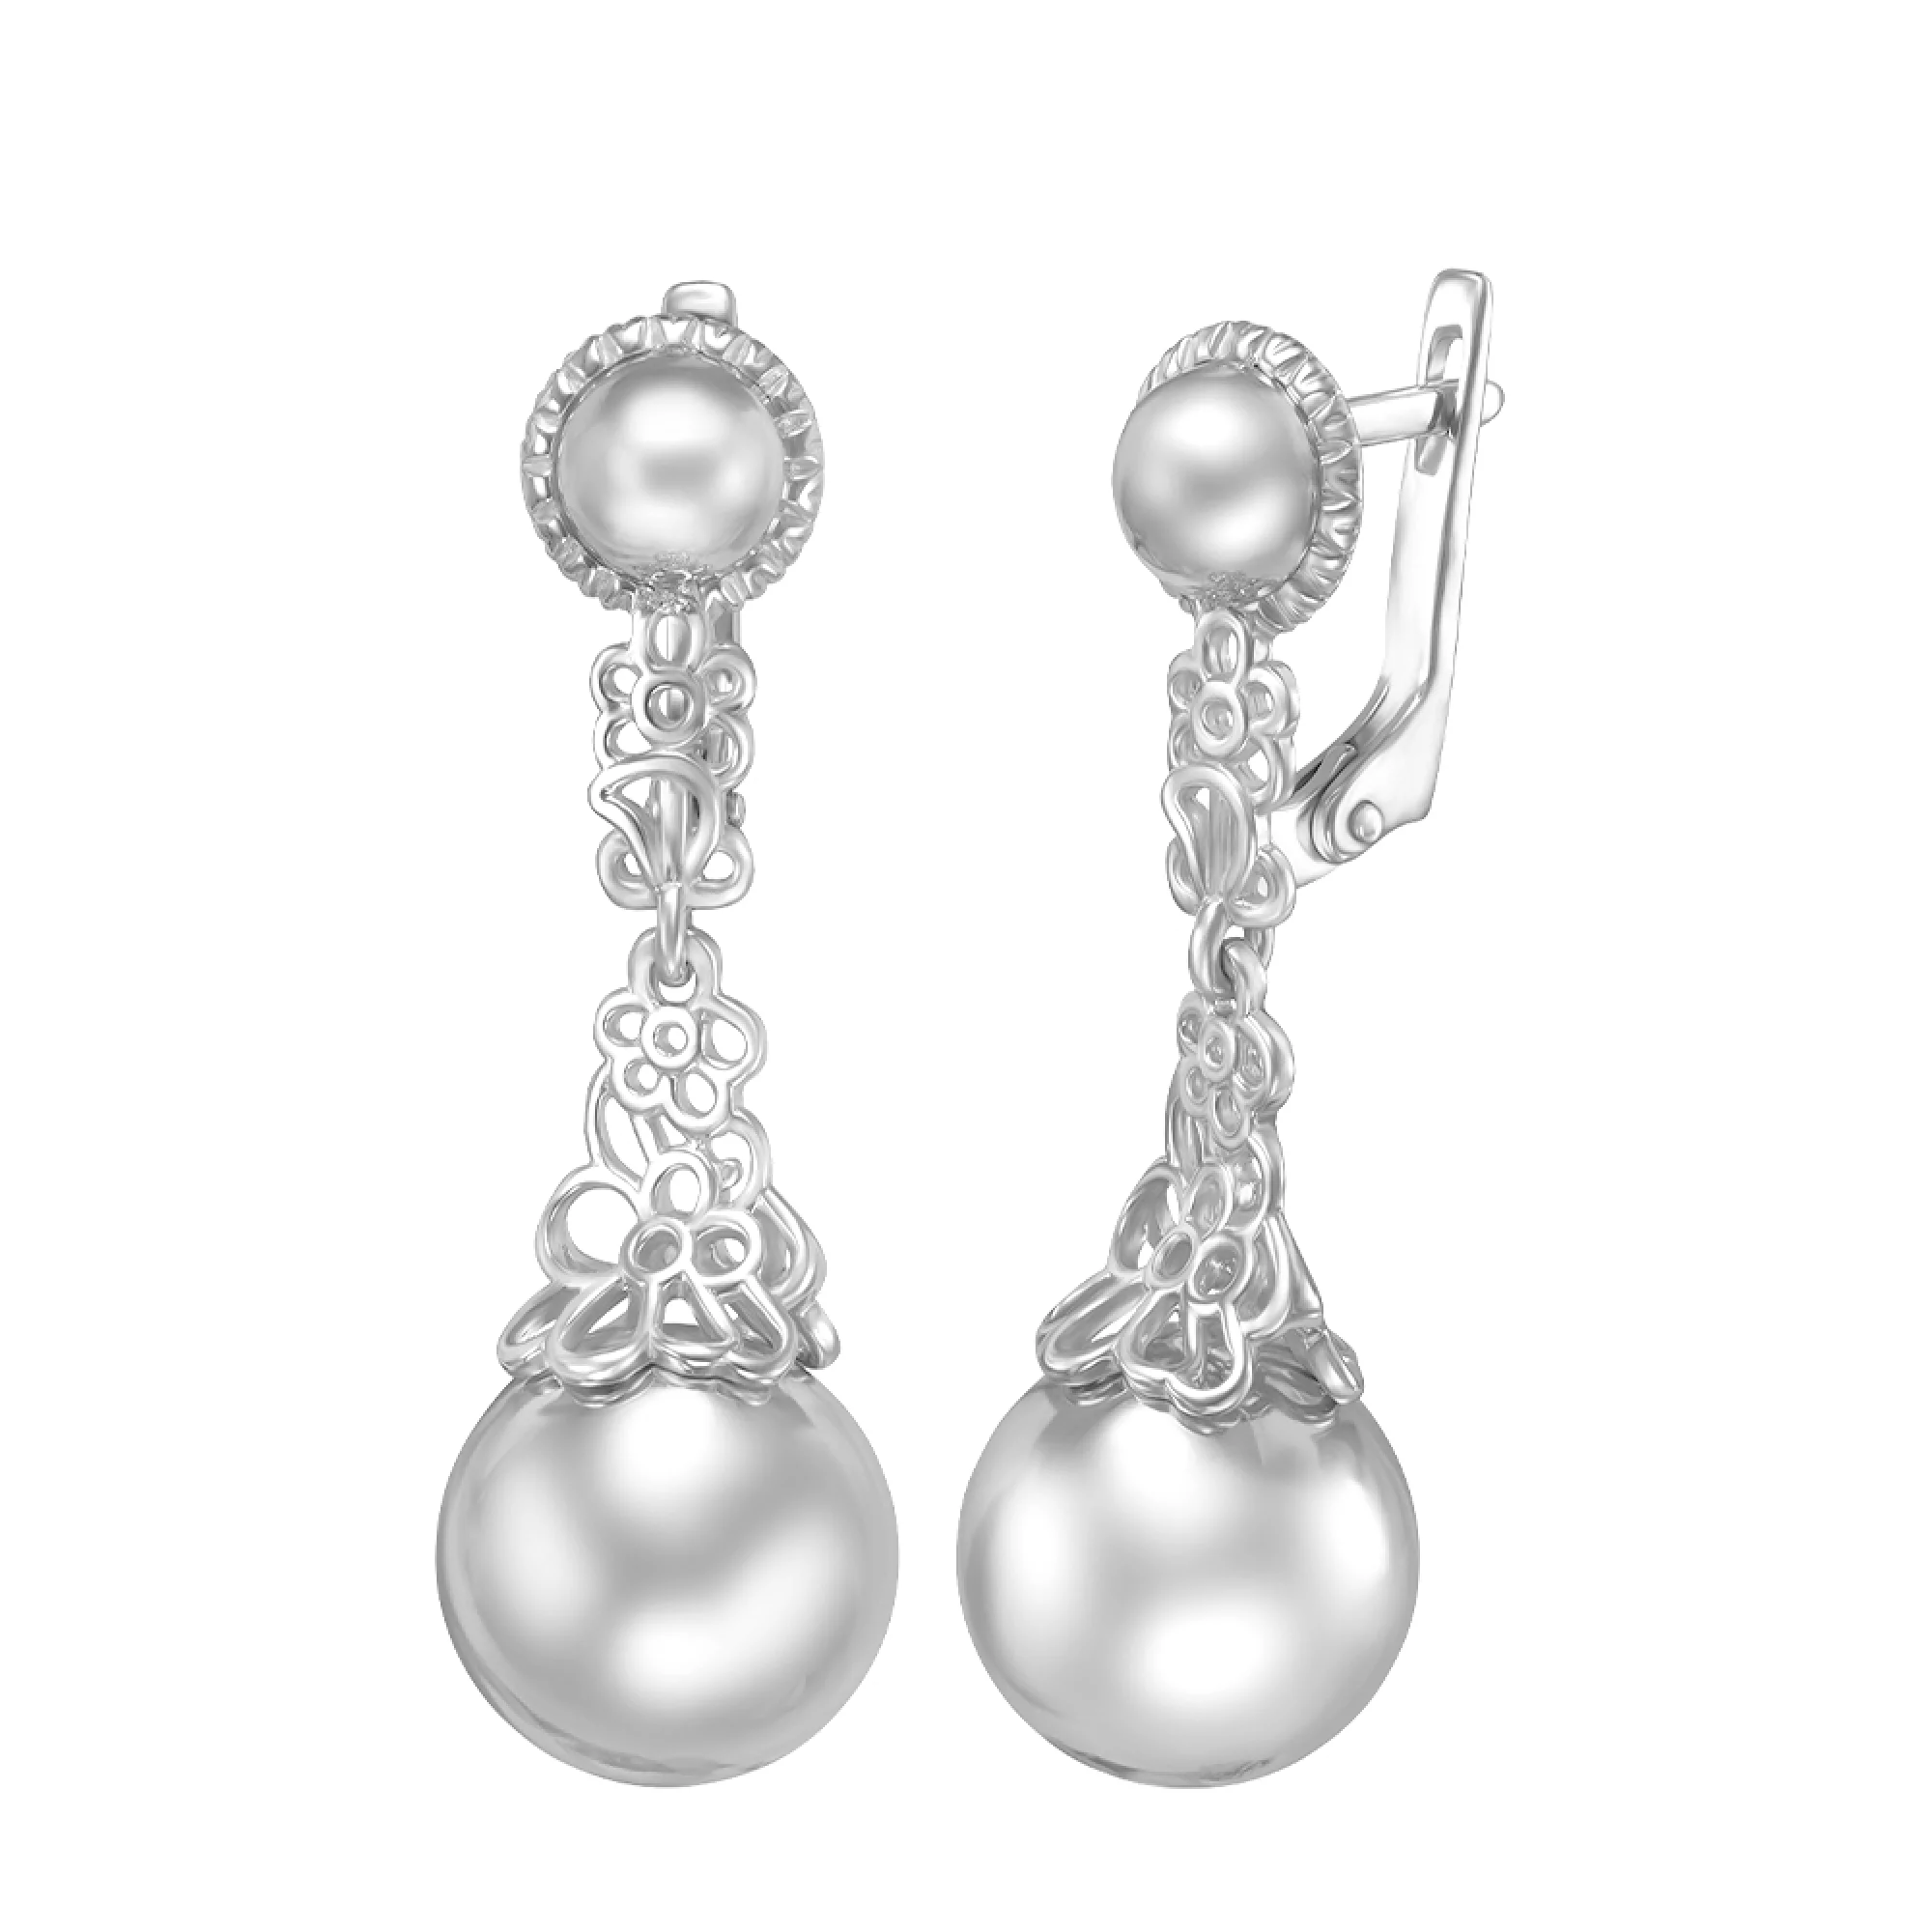 Срібні ажурні сережки з підвісними кулями - 1536127 – зображення 1